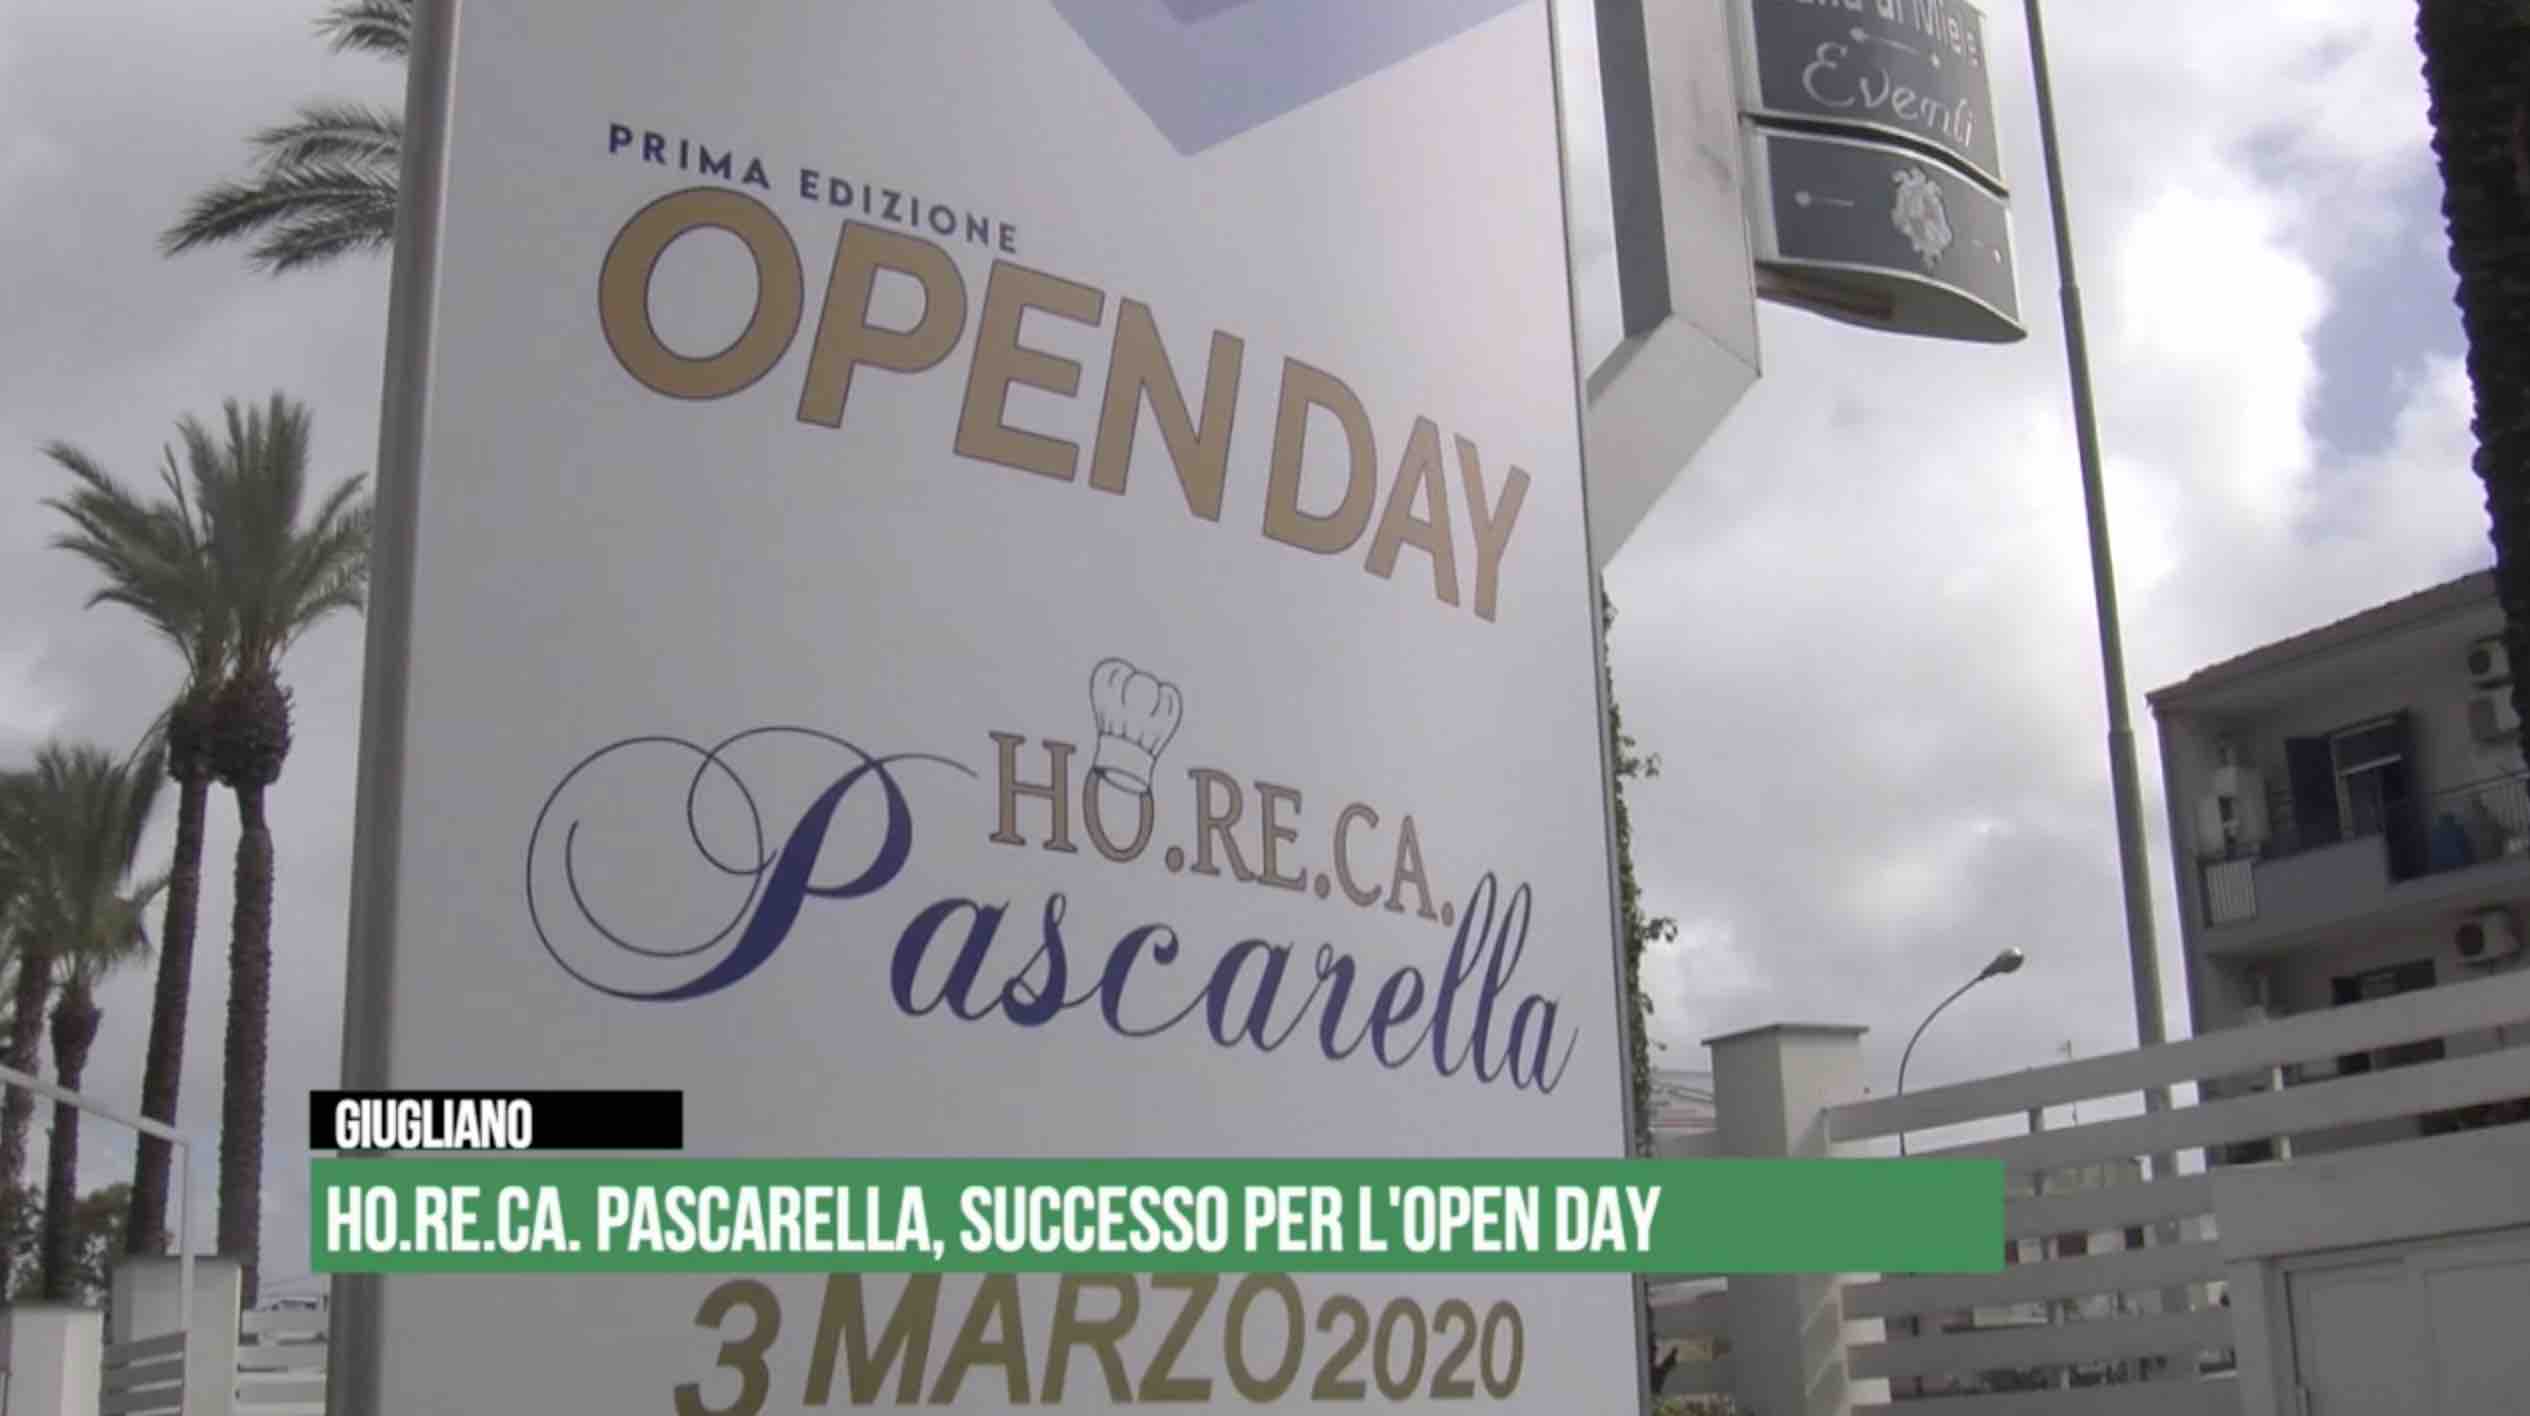 open day ho.re.ca. pascarella varcaturo giugliano food service